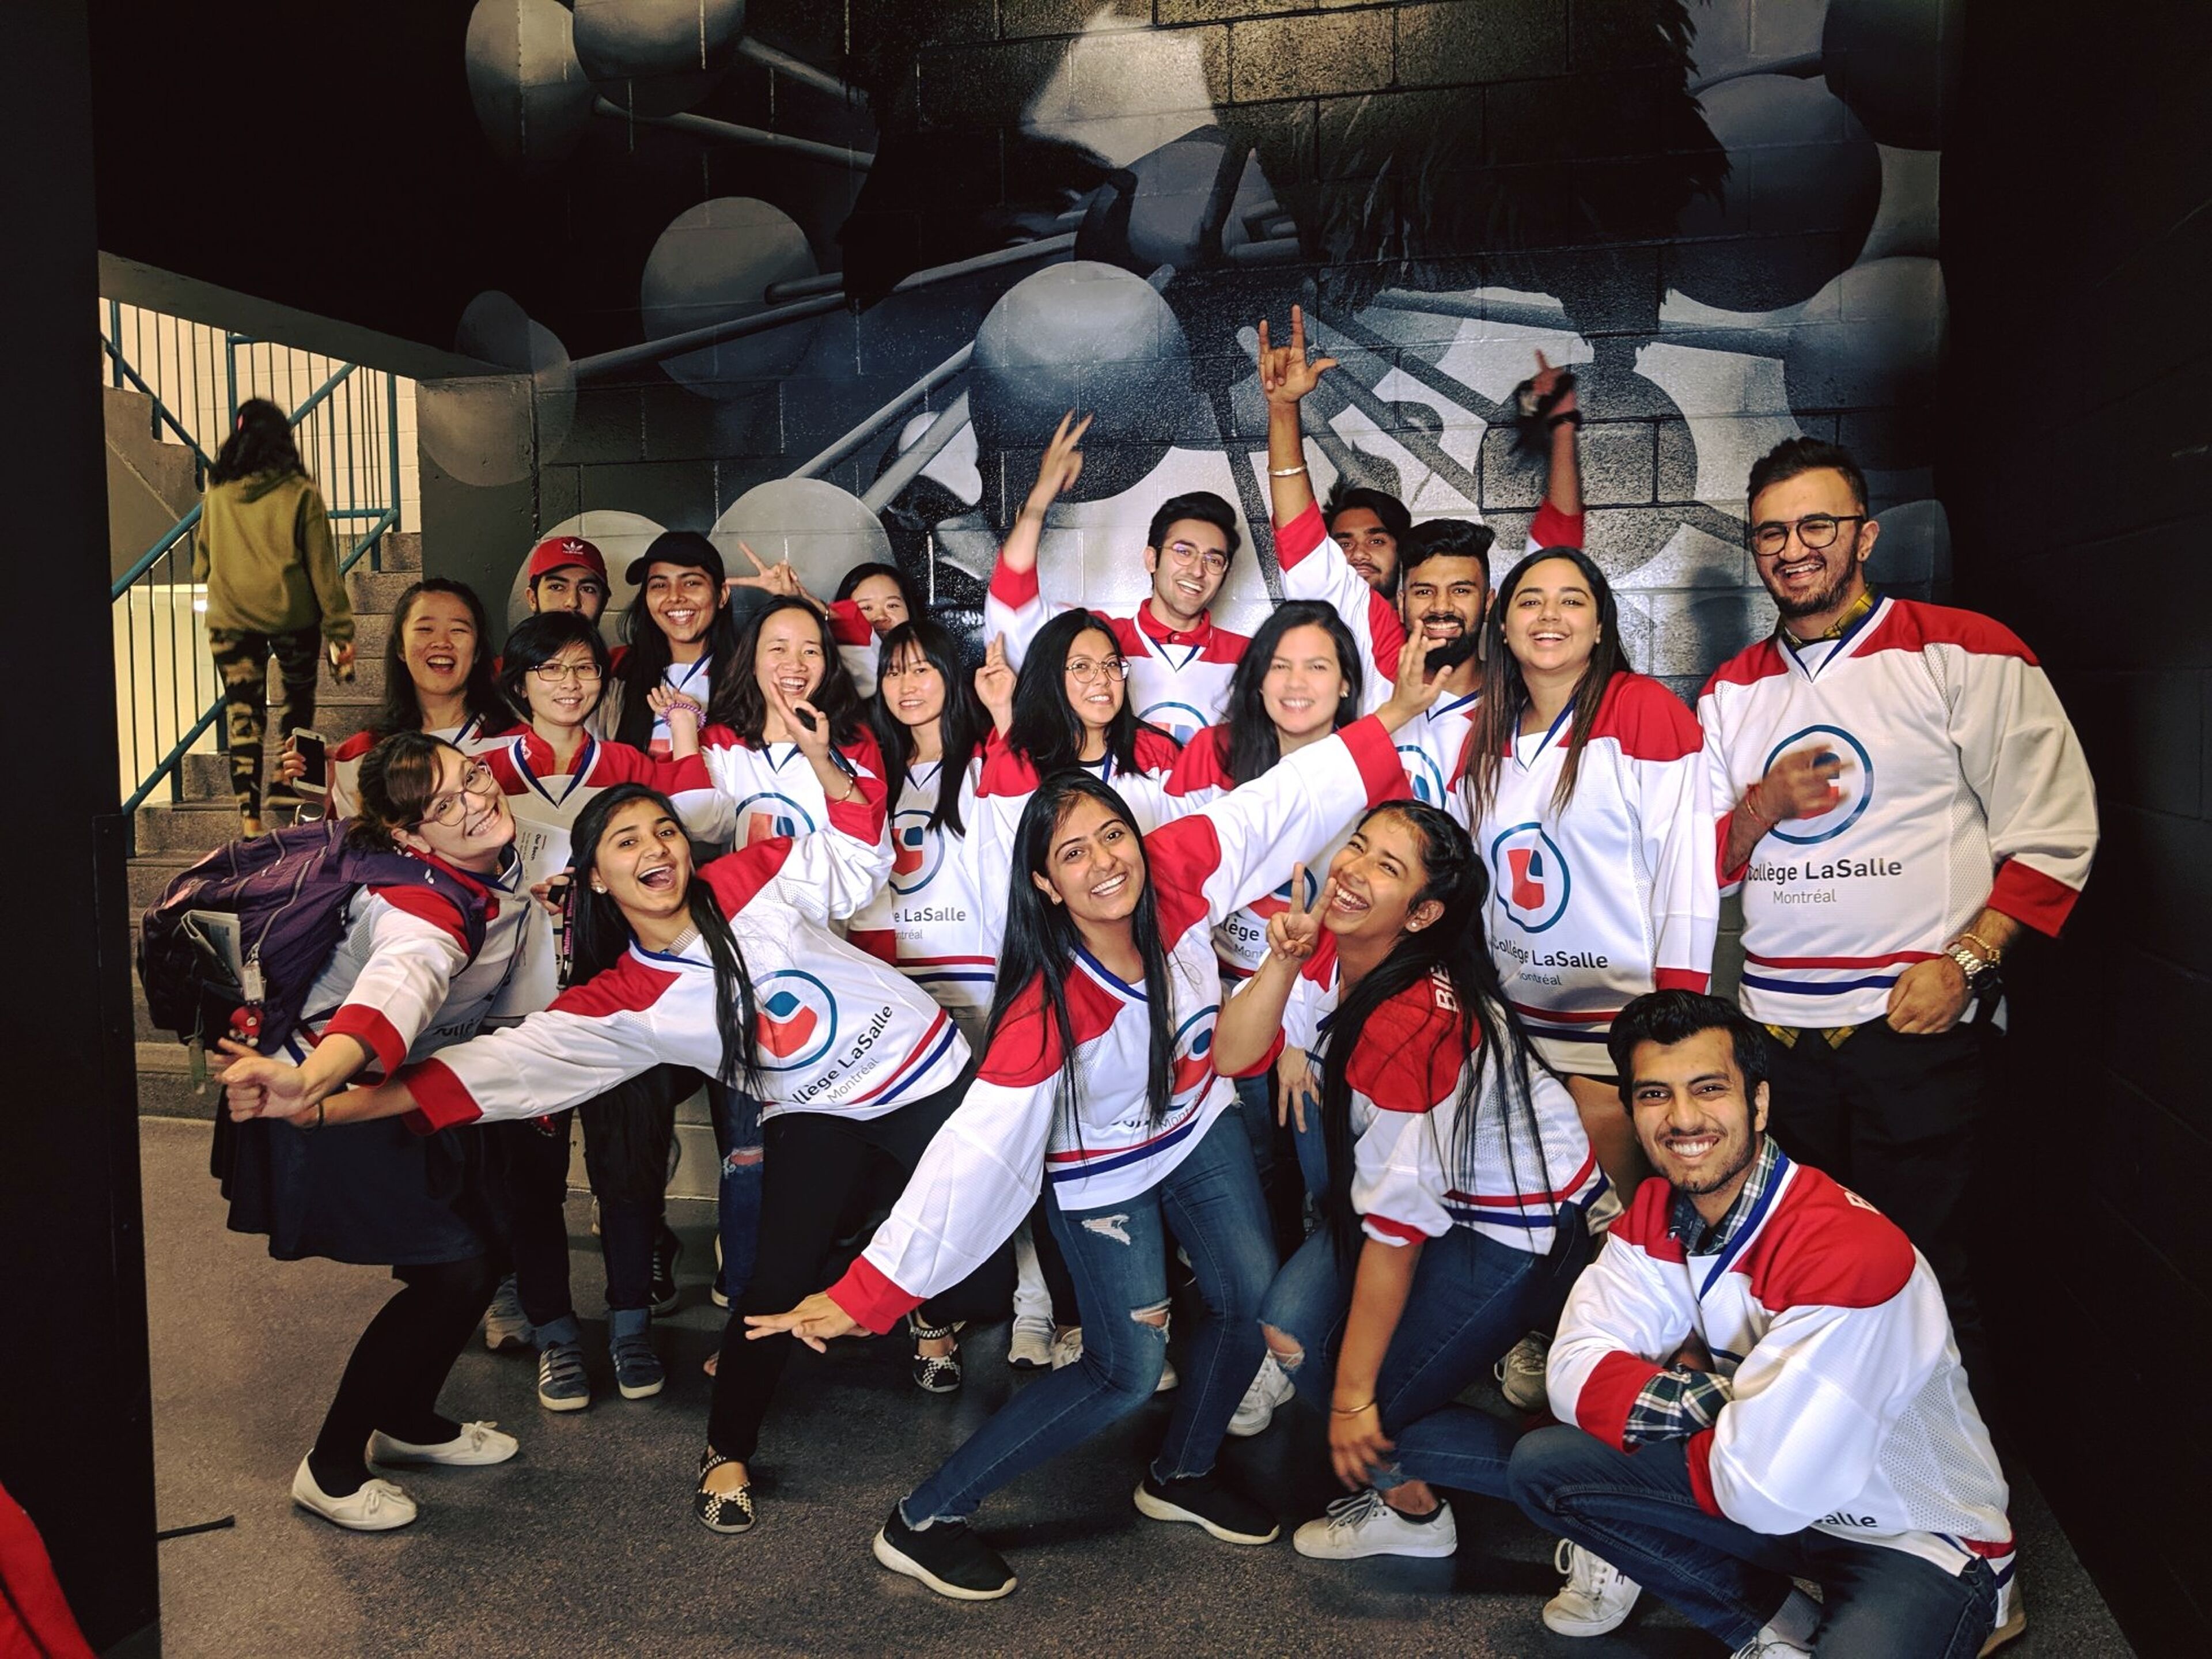 Un grupo alegre de estudiantes con jerseys de hockey posando para una foto de celebración, con expresiones vibrantes.